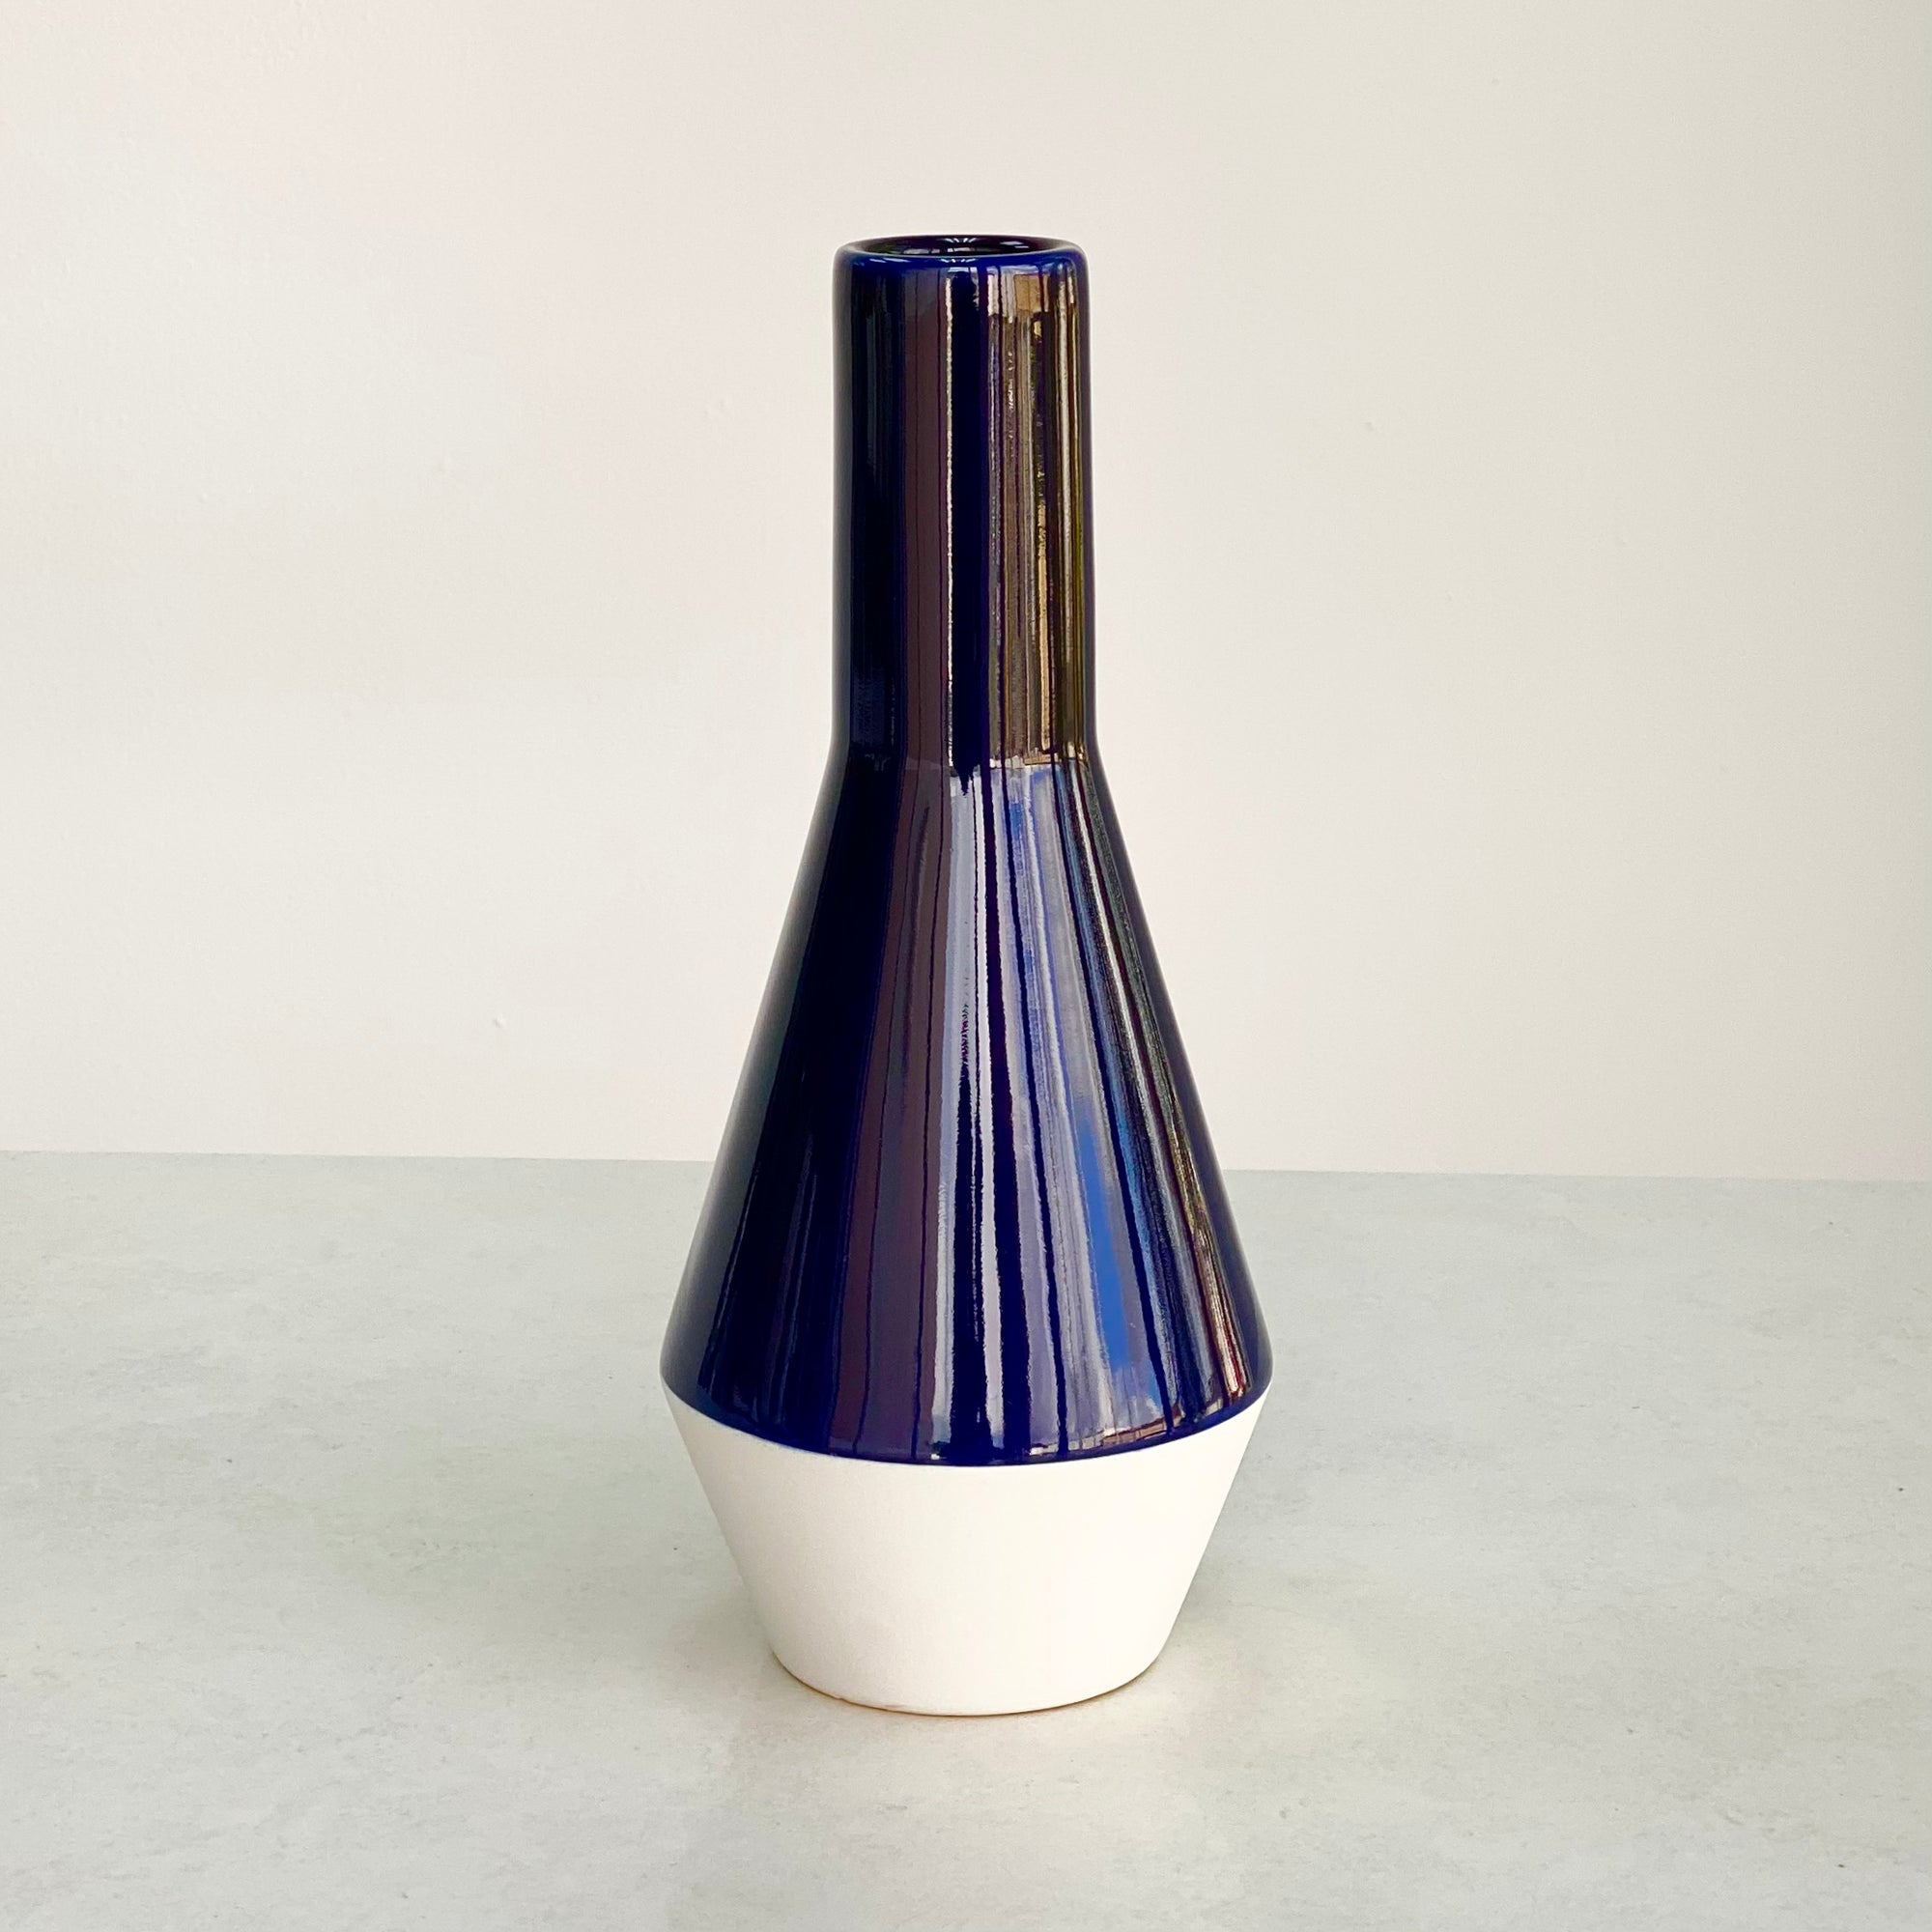 Round Curved White and Dark Blue Vase